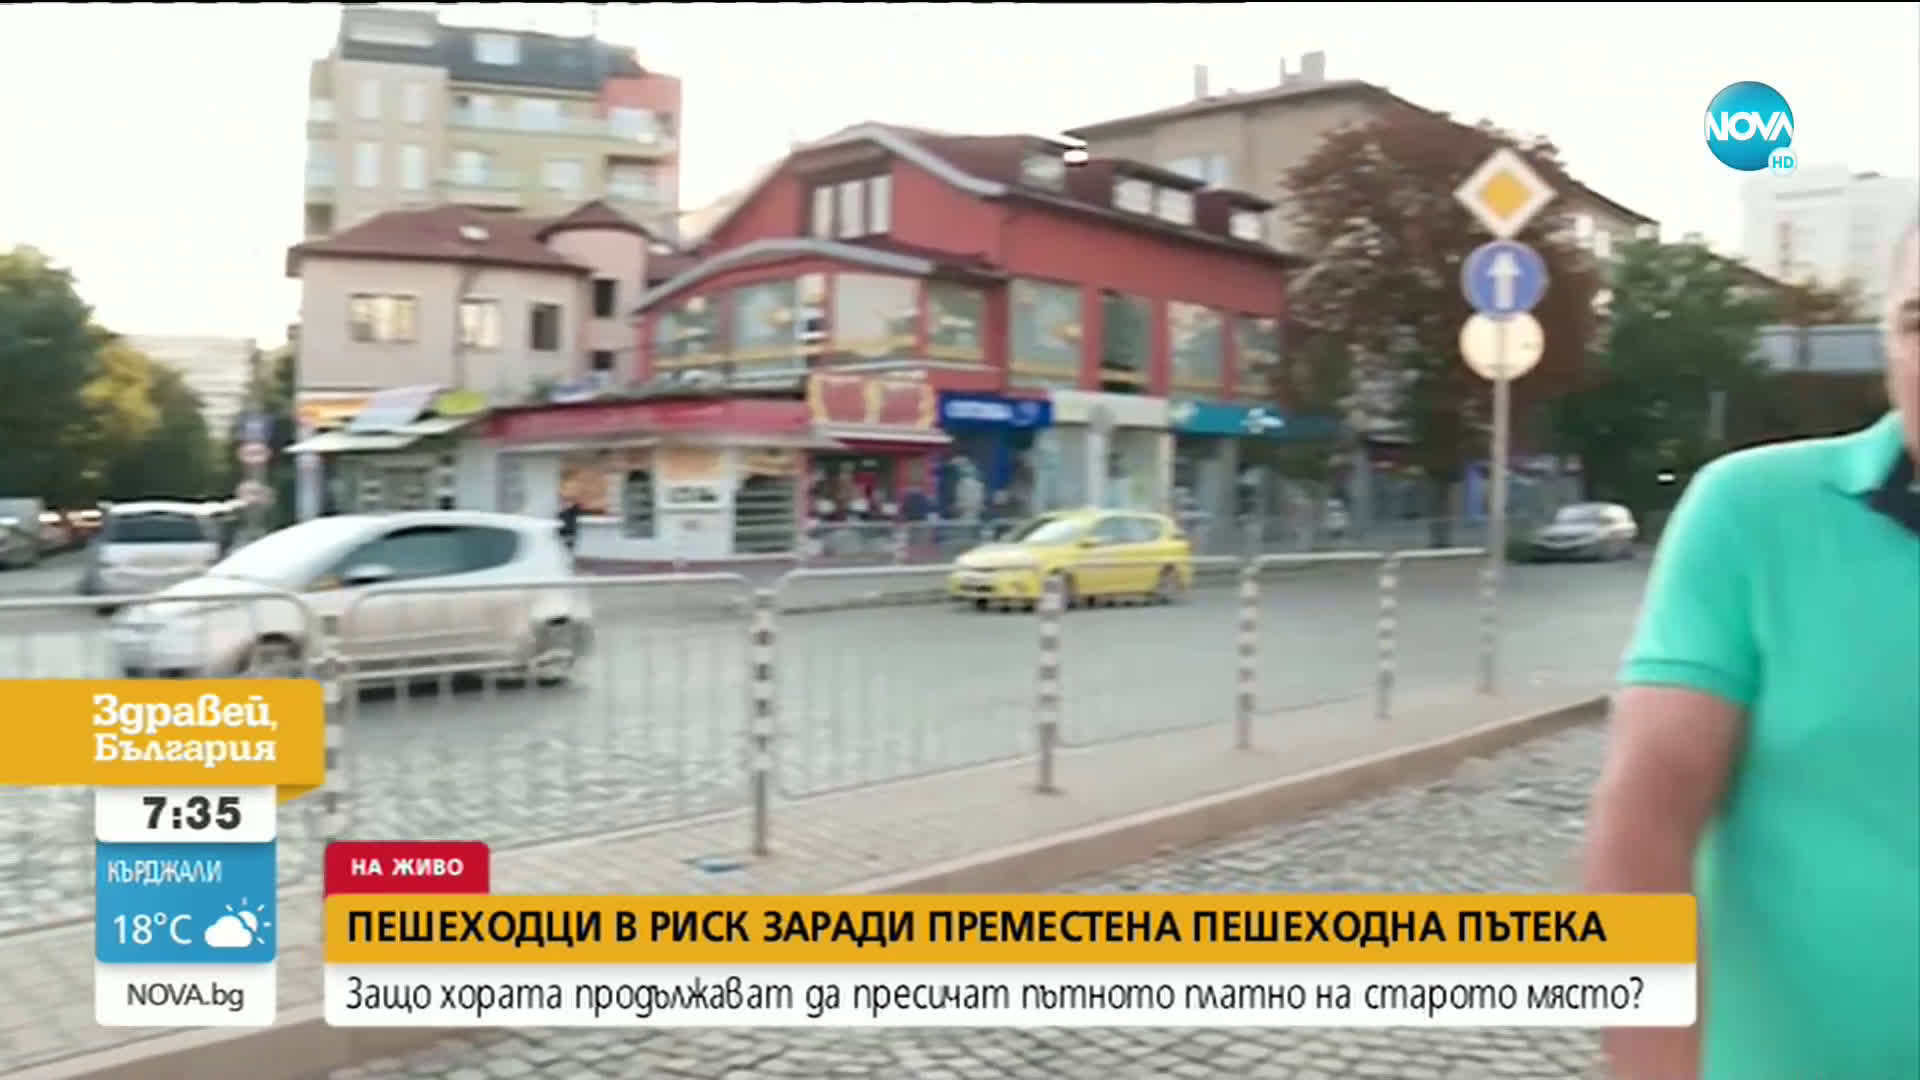 Пешеходци в риск заради преместена пешеходна пътека в София